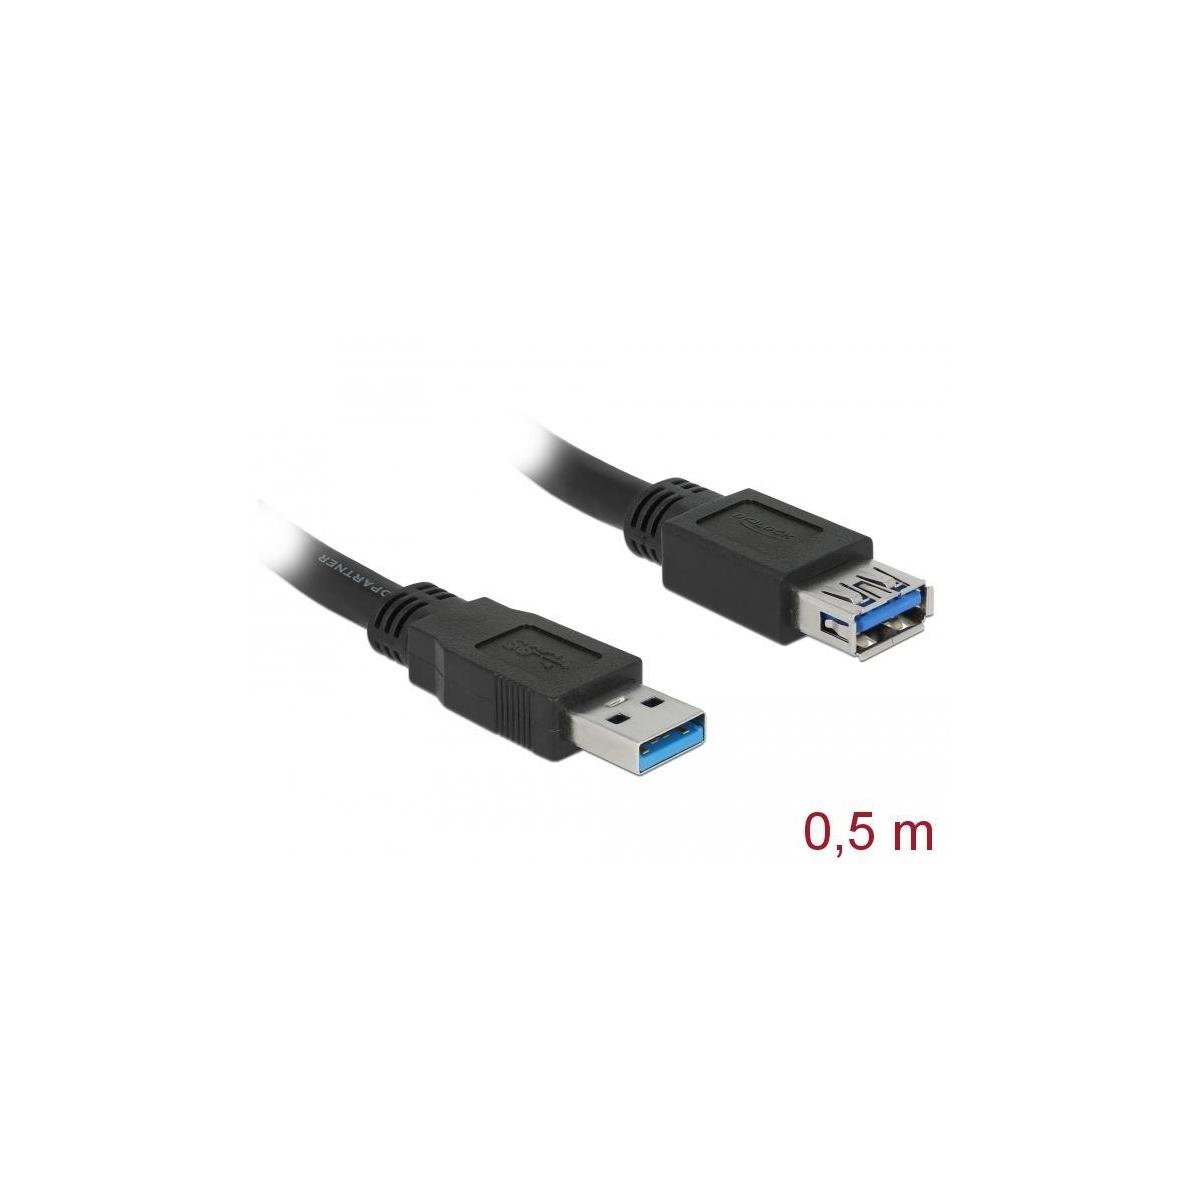 & 0,5m Zubehör DELOCK Kabel, Kabel 3.0 St Bu DELOCK USB & Schwarz Peripheriegeräte Typ-A USB <lt/>